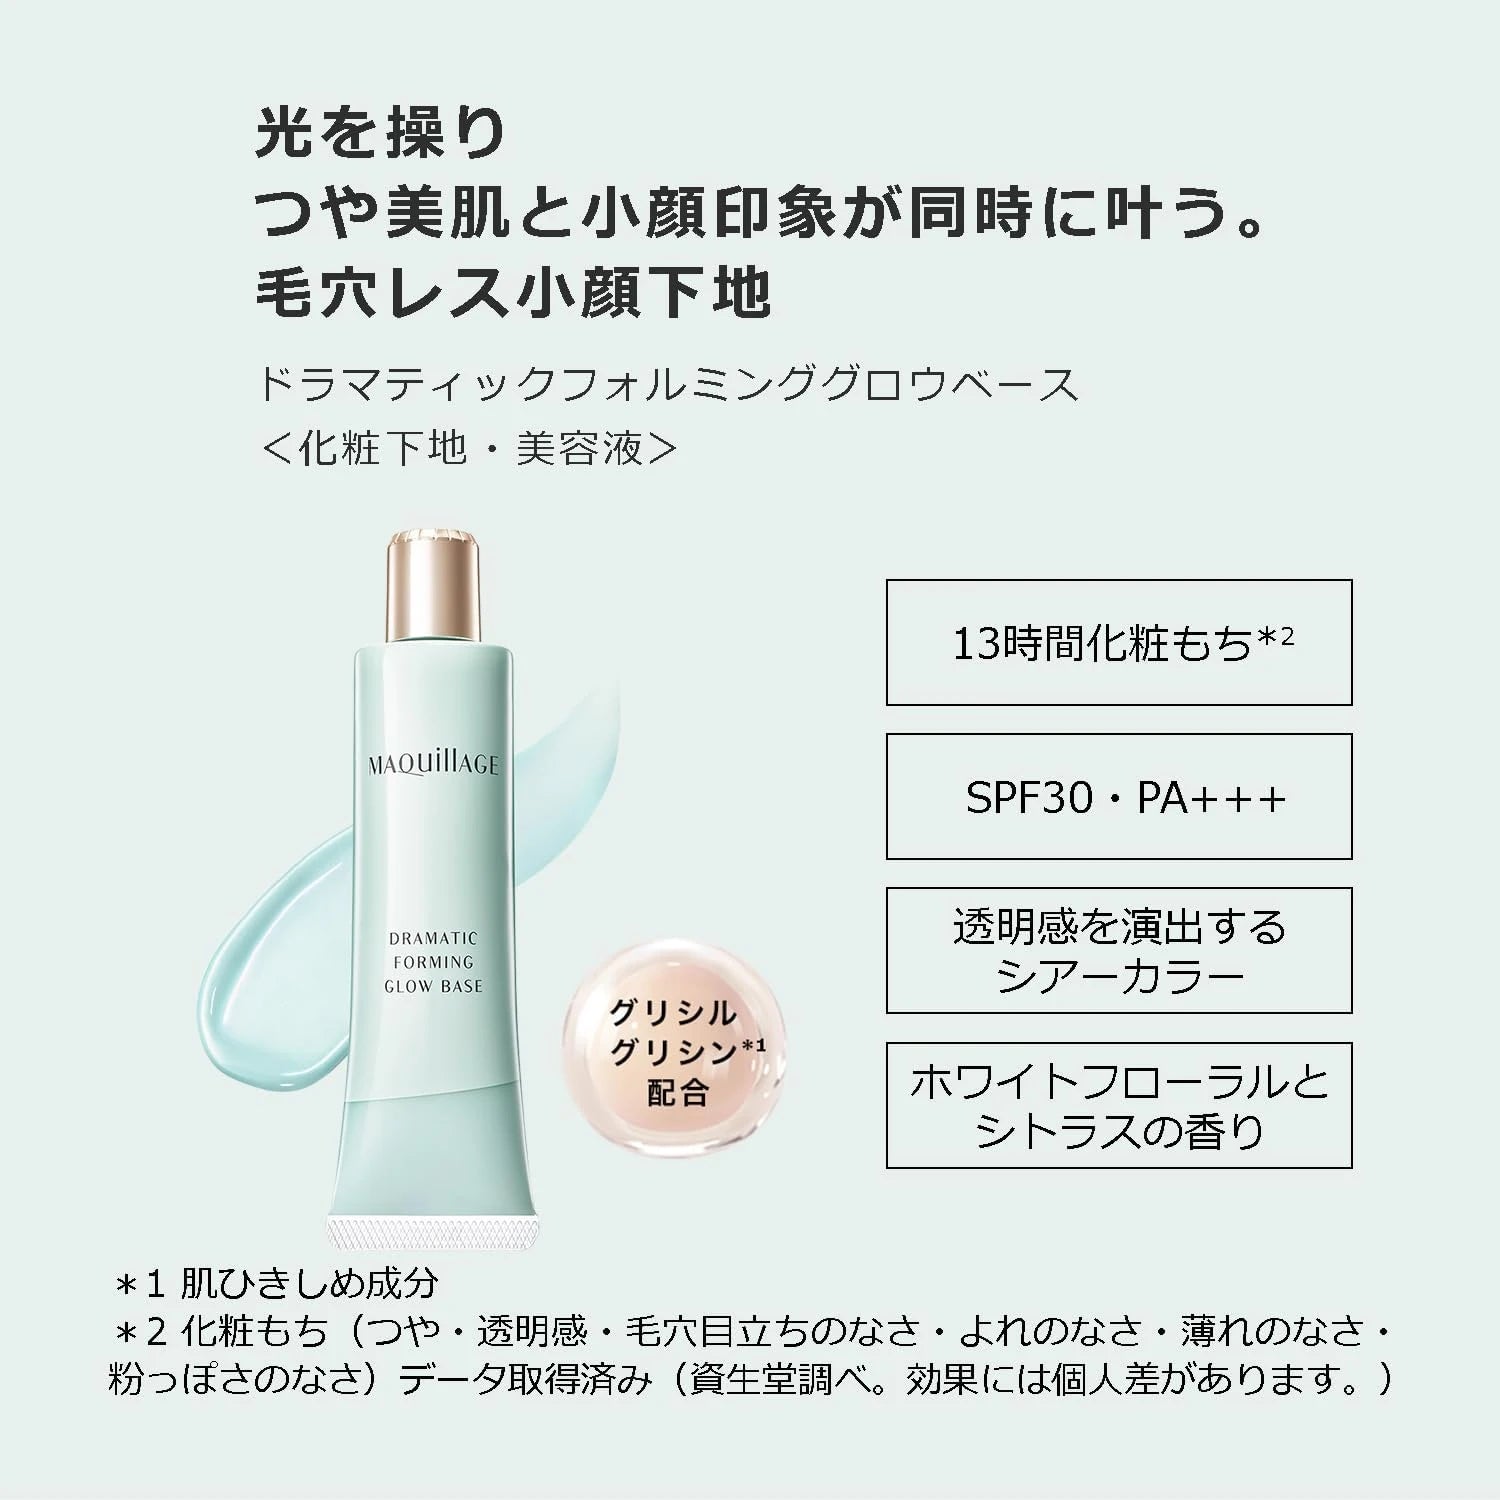 Shiseido Maquillage Dramatic Forming Glow Base Primer SPF30 PA+++ 30g - Buy Me Japan